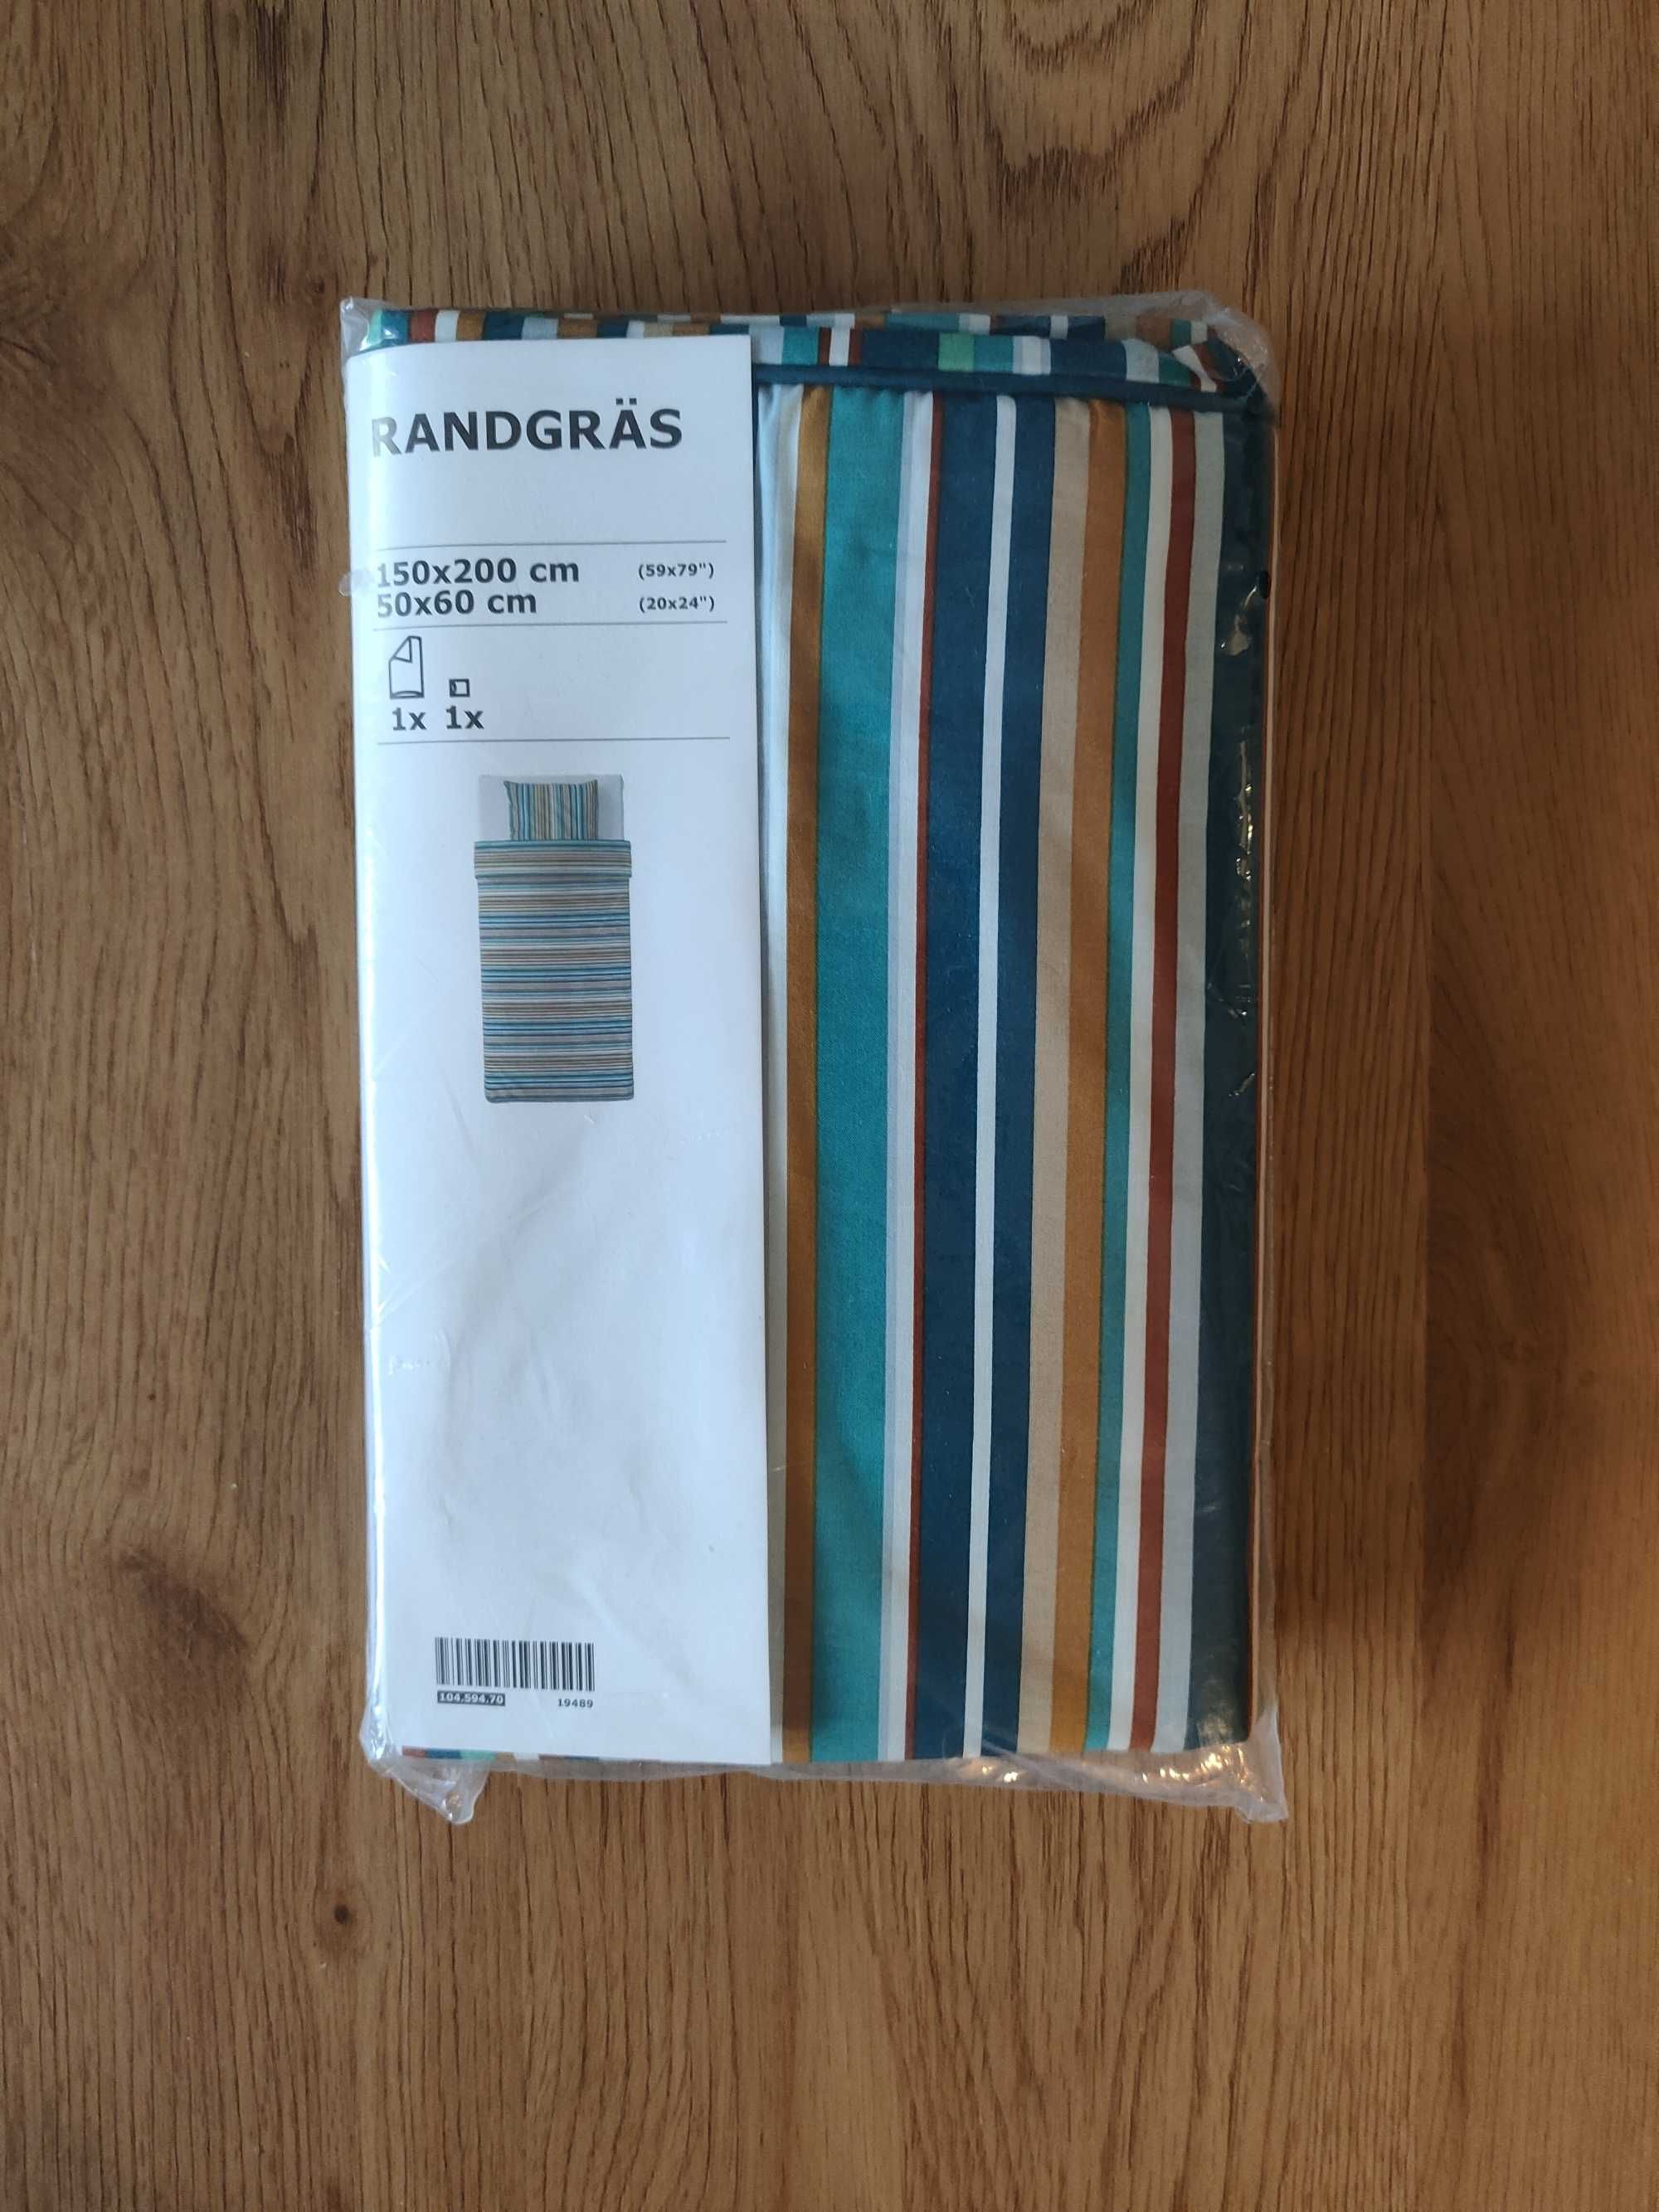 Komplet pościeli IKEA Randgras: kołdra 150cm x200cm,poduszka 50cmx60cm